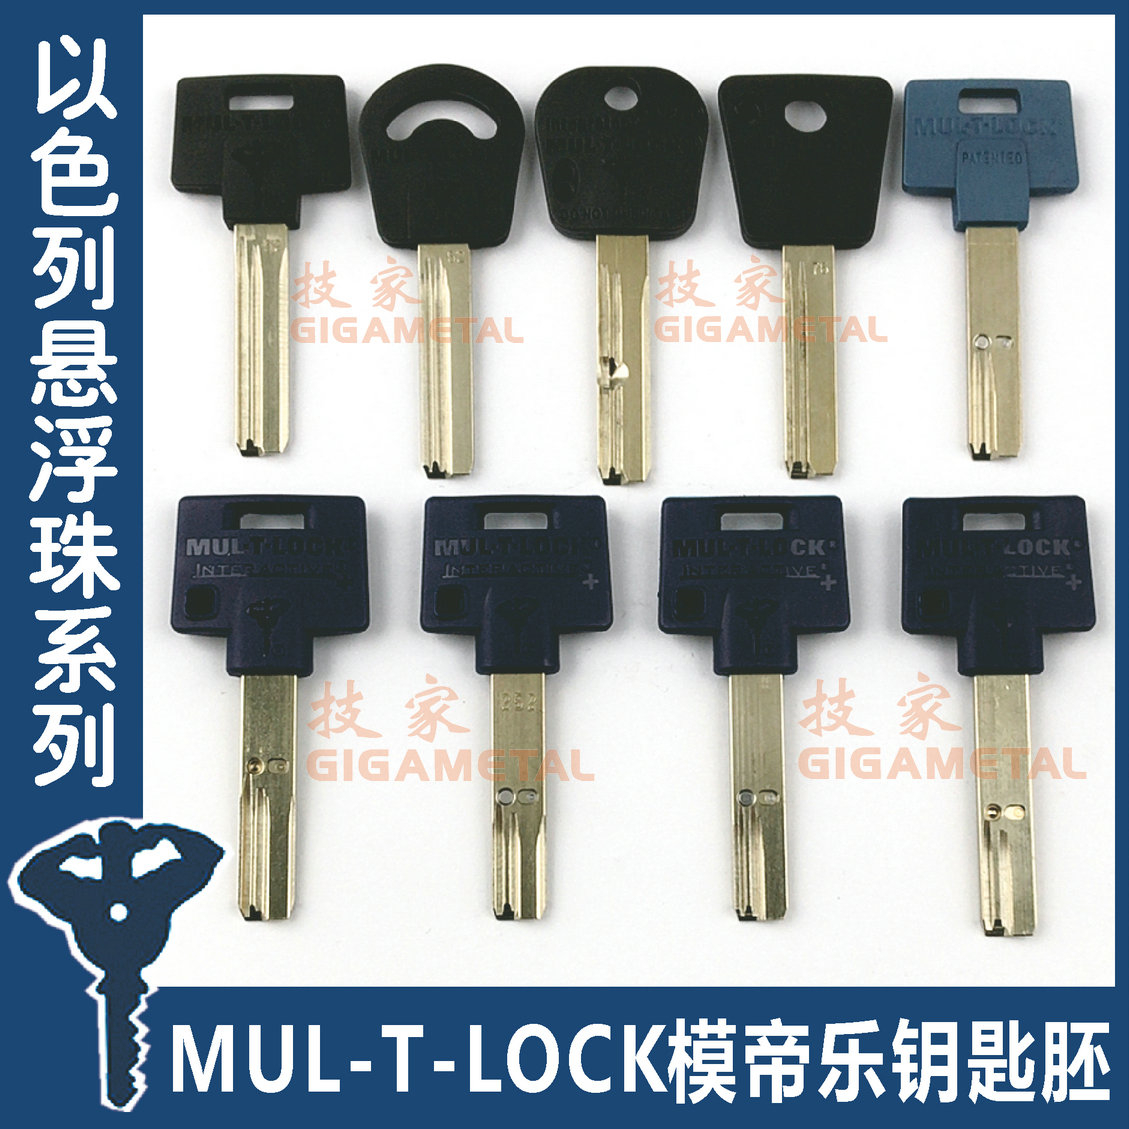 MUL-T-LOCK模帝乐钥匙胚 7X71362062526266MT5以色列钥匙胚 基础建材 家具锁/抽屉锁/柜门锁 原图主图